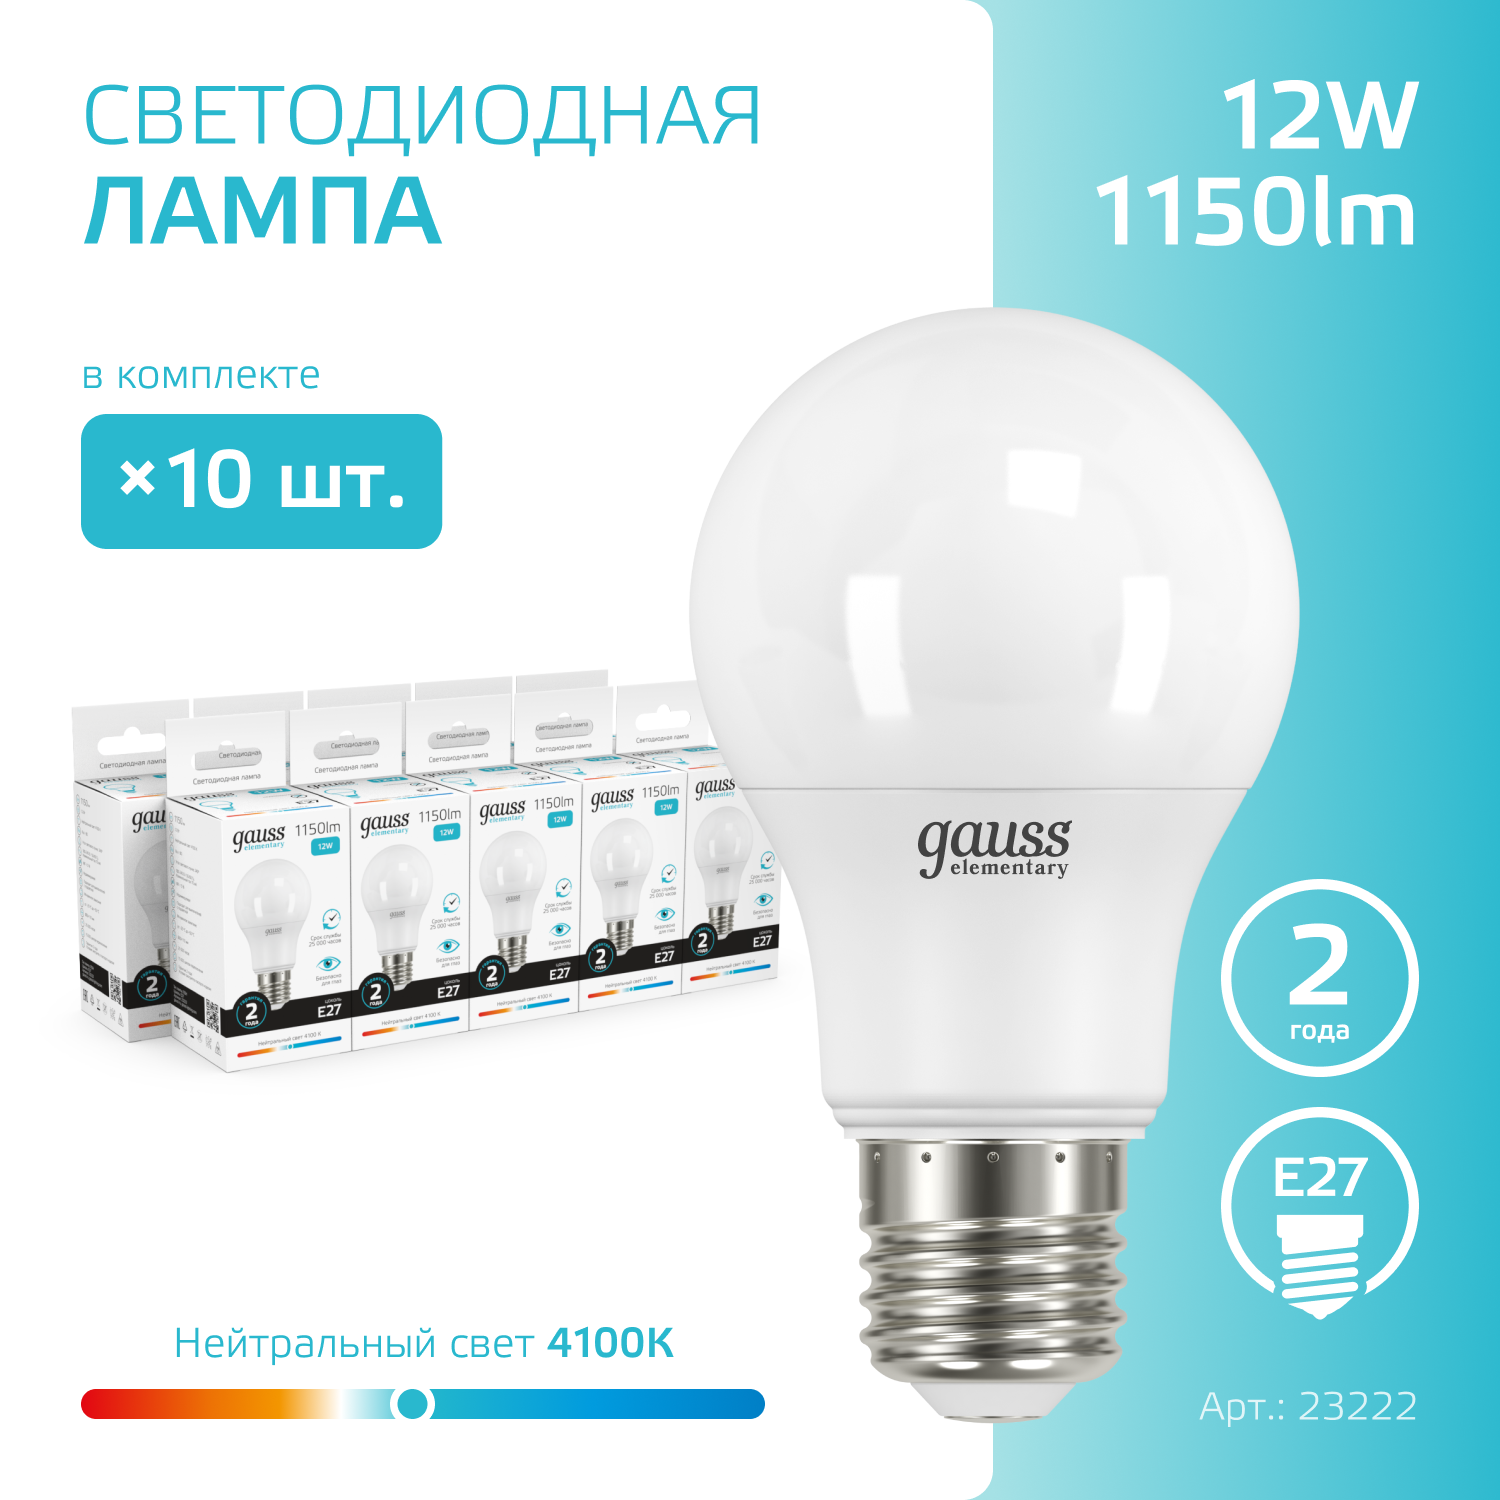 Лампочка светодиодная E27 Груша 12W нейтр белый свет 4100K упаковка 10 шт. Gauss Elementary